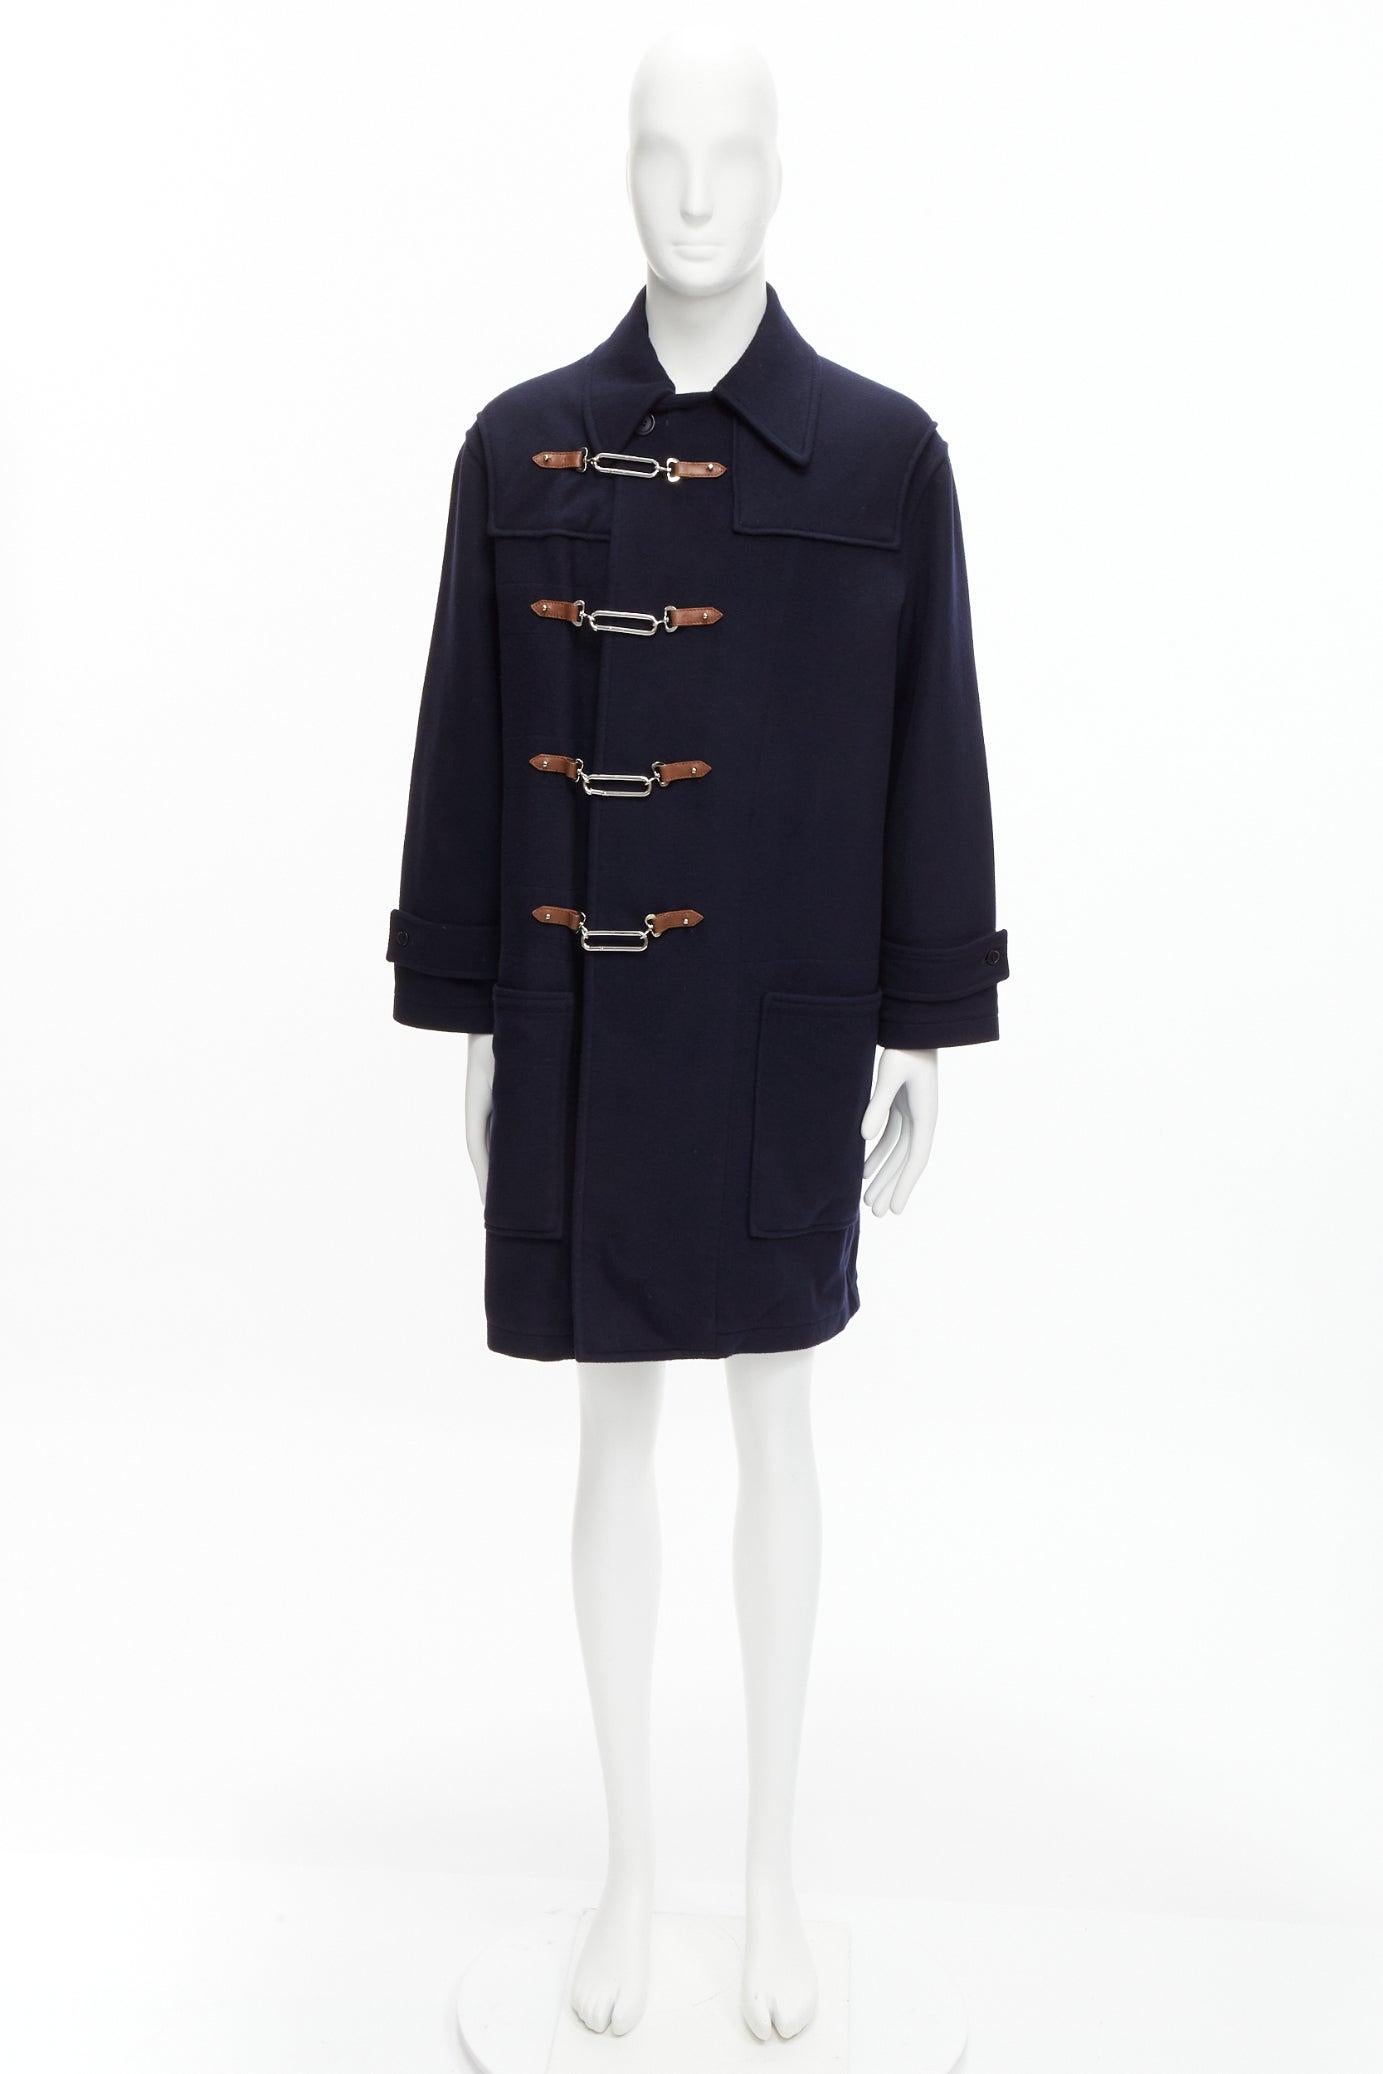 RALPH LAUREN Label Fintona 100% Wolle navy silberfarbener Mantel mit Knebelschnalle Größe 6 M im Angebot 6